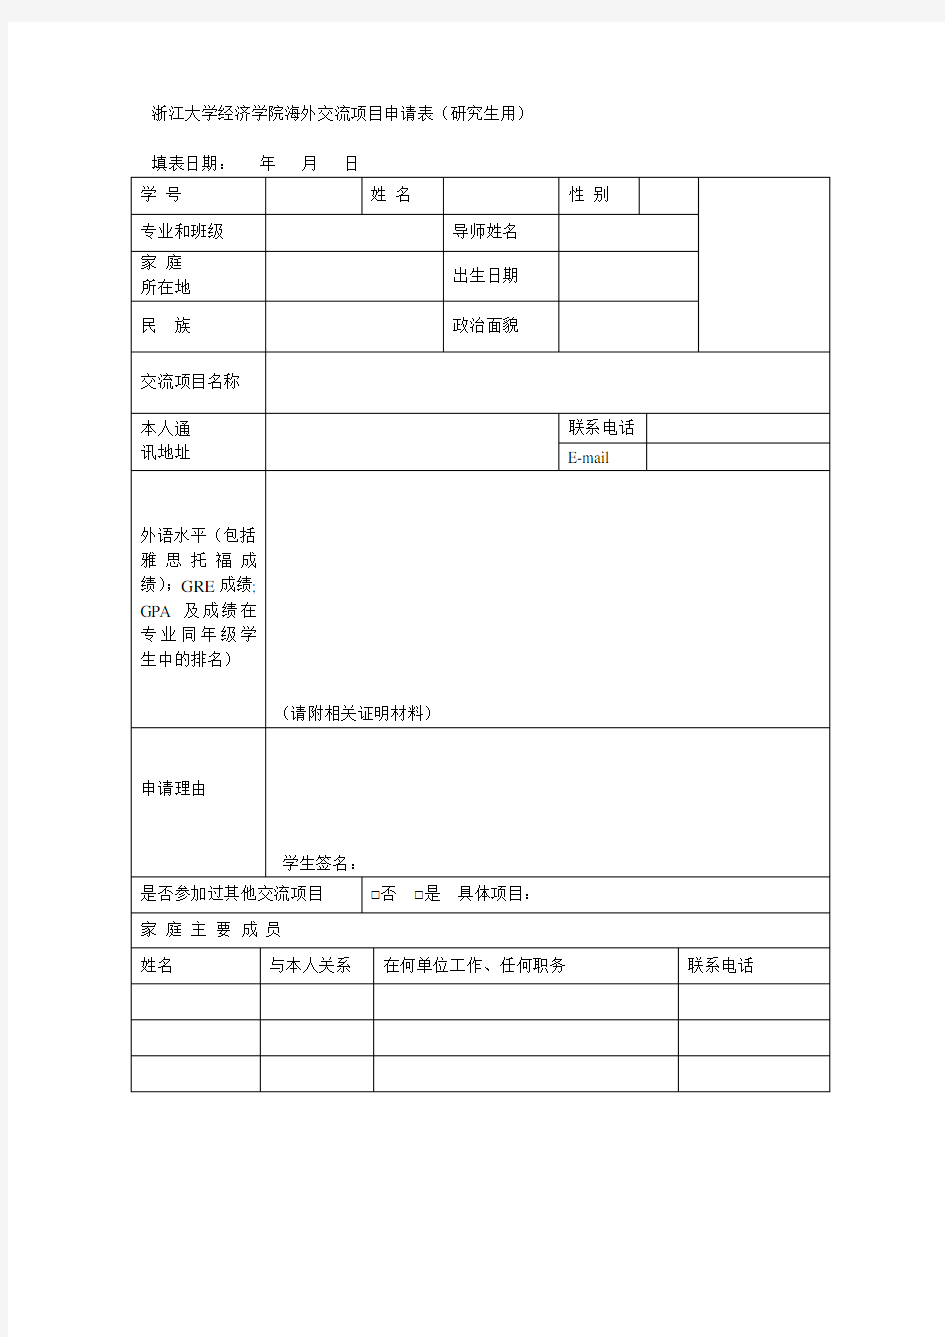 浙江大学经济学院海外交流项目申请表(研究生用)